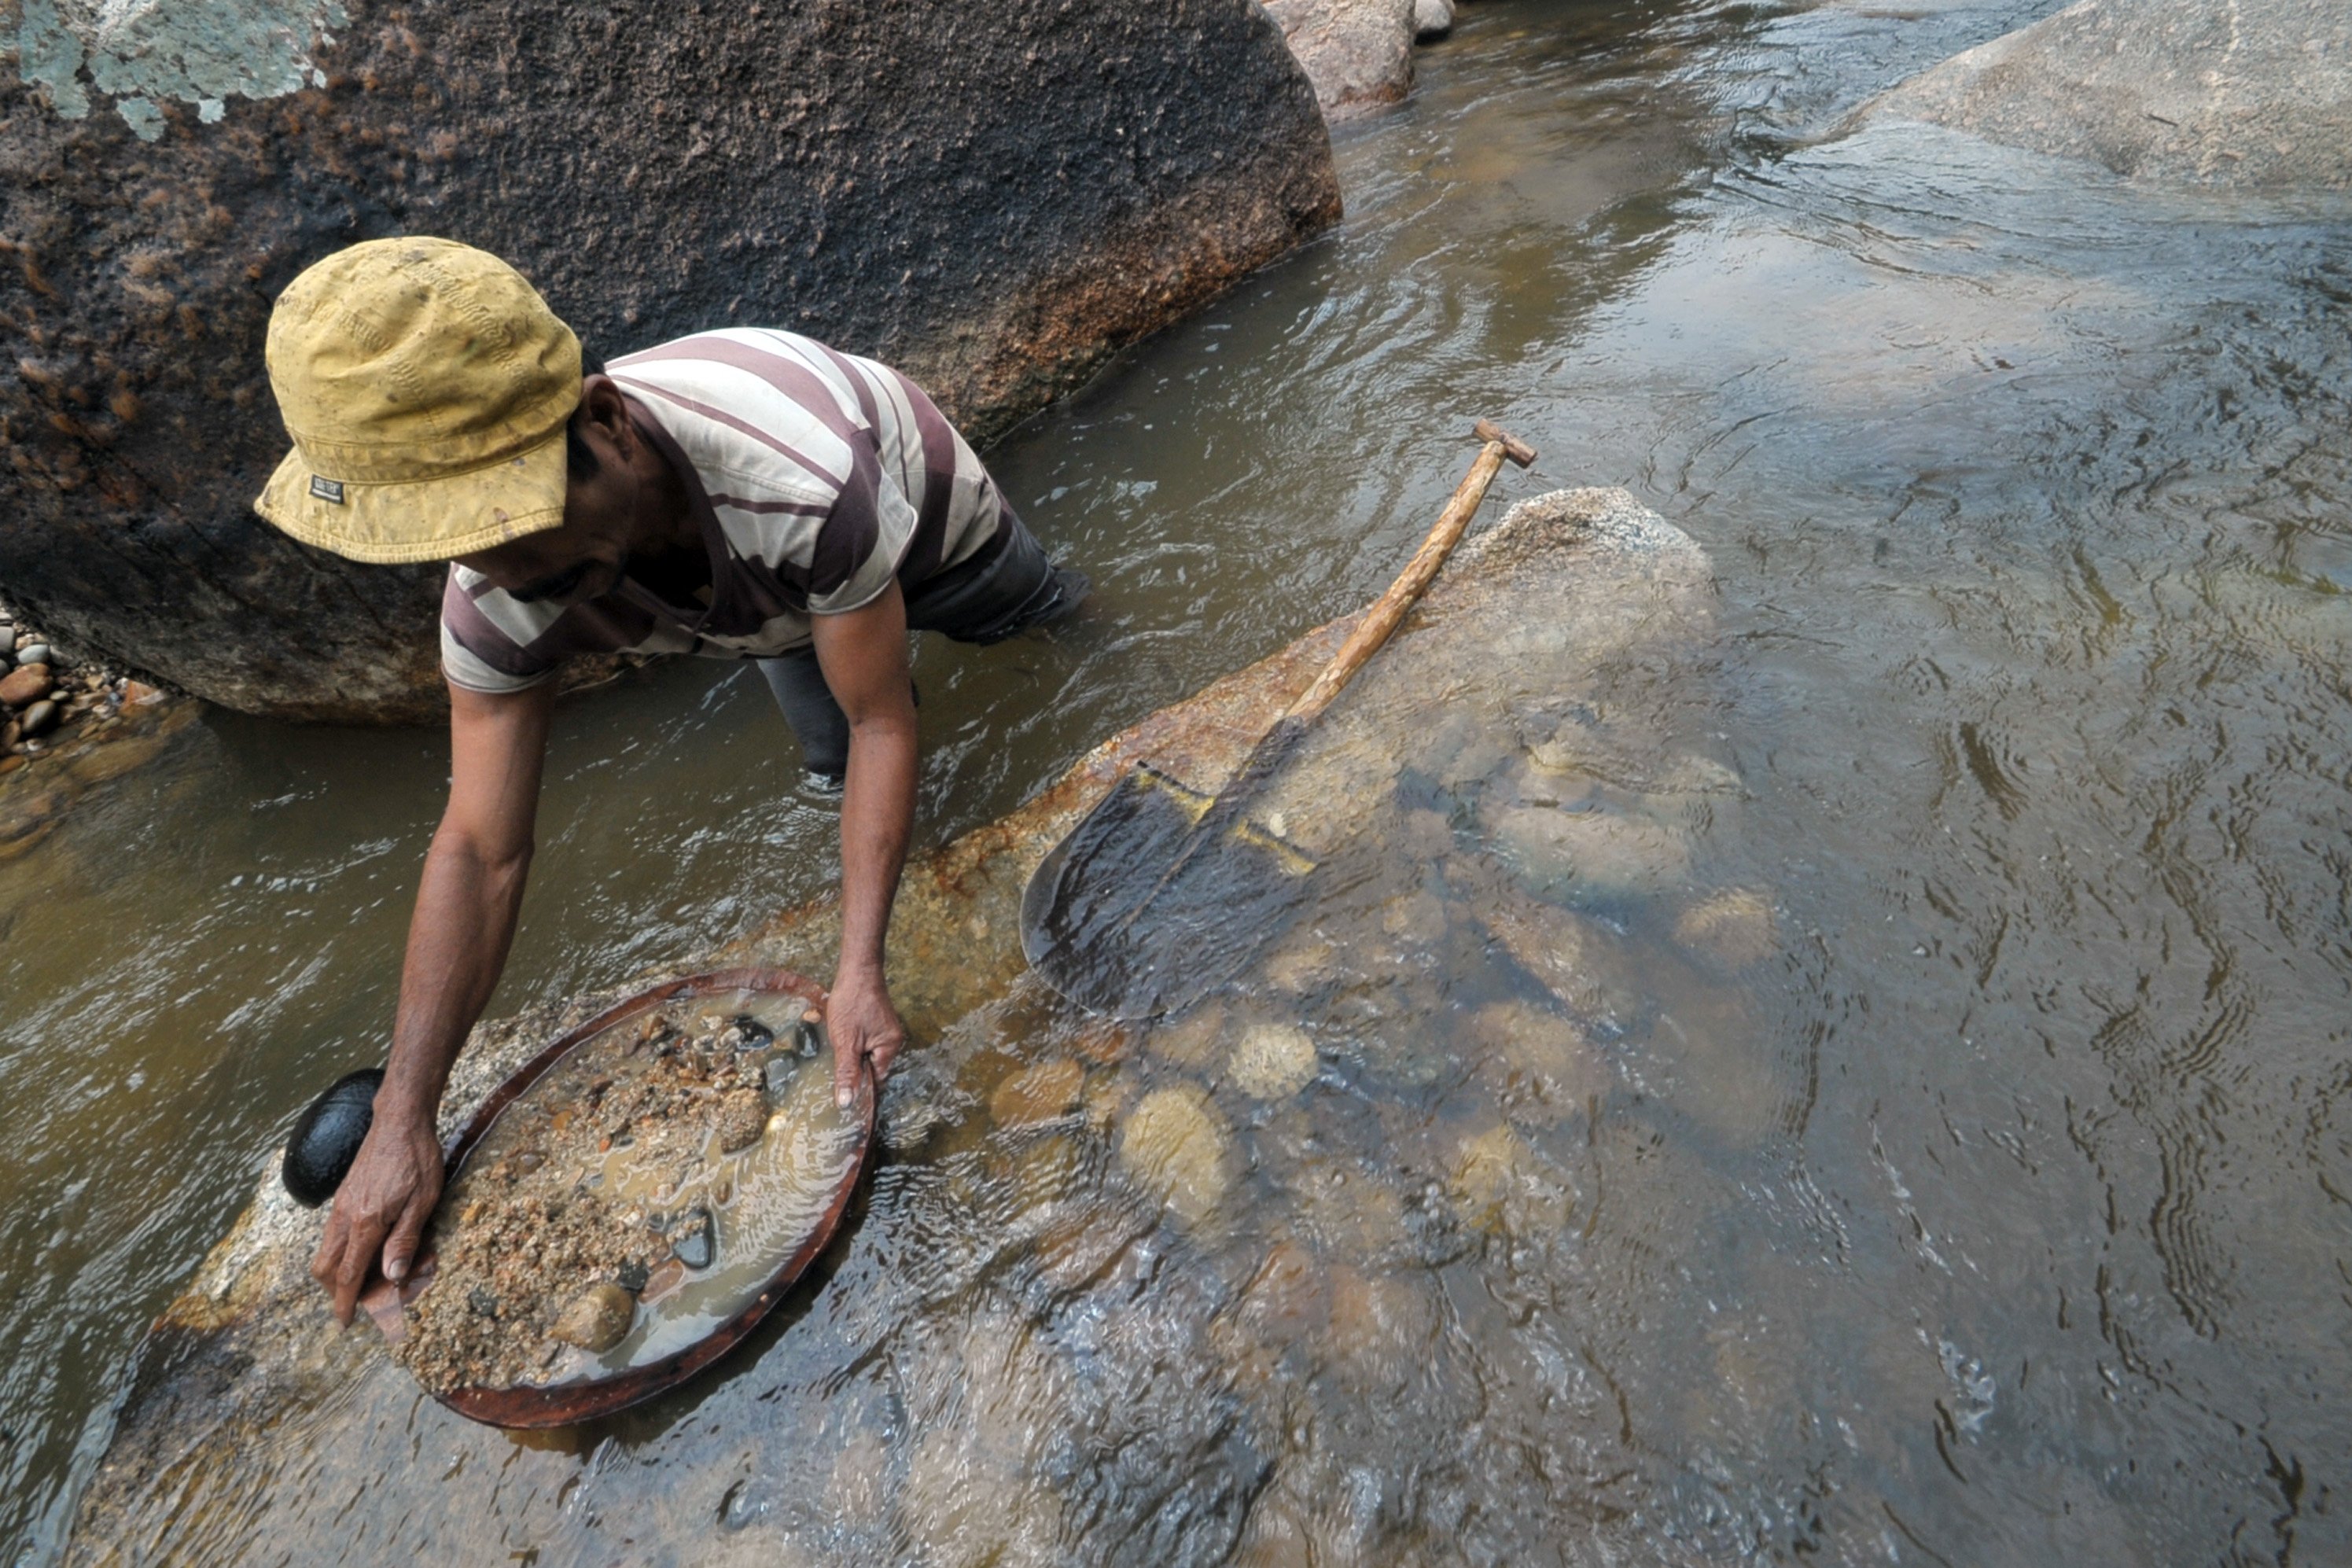 Warga mencari emas dengan mendulang di Sungai Batang Sumpur Lubuk Tasapik, Nagari Sisawah, Sumatera Barat.